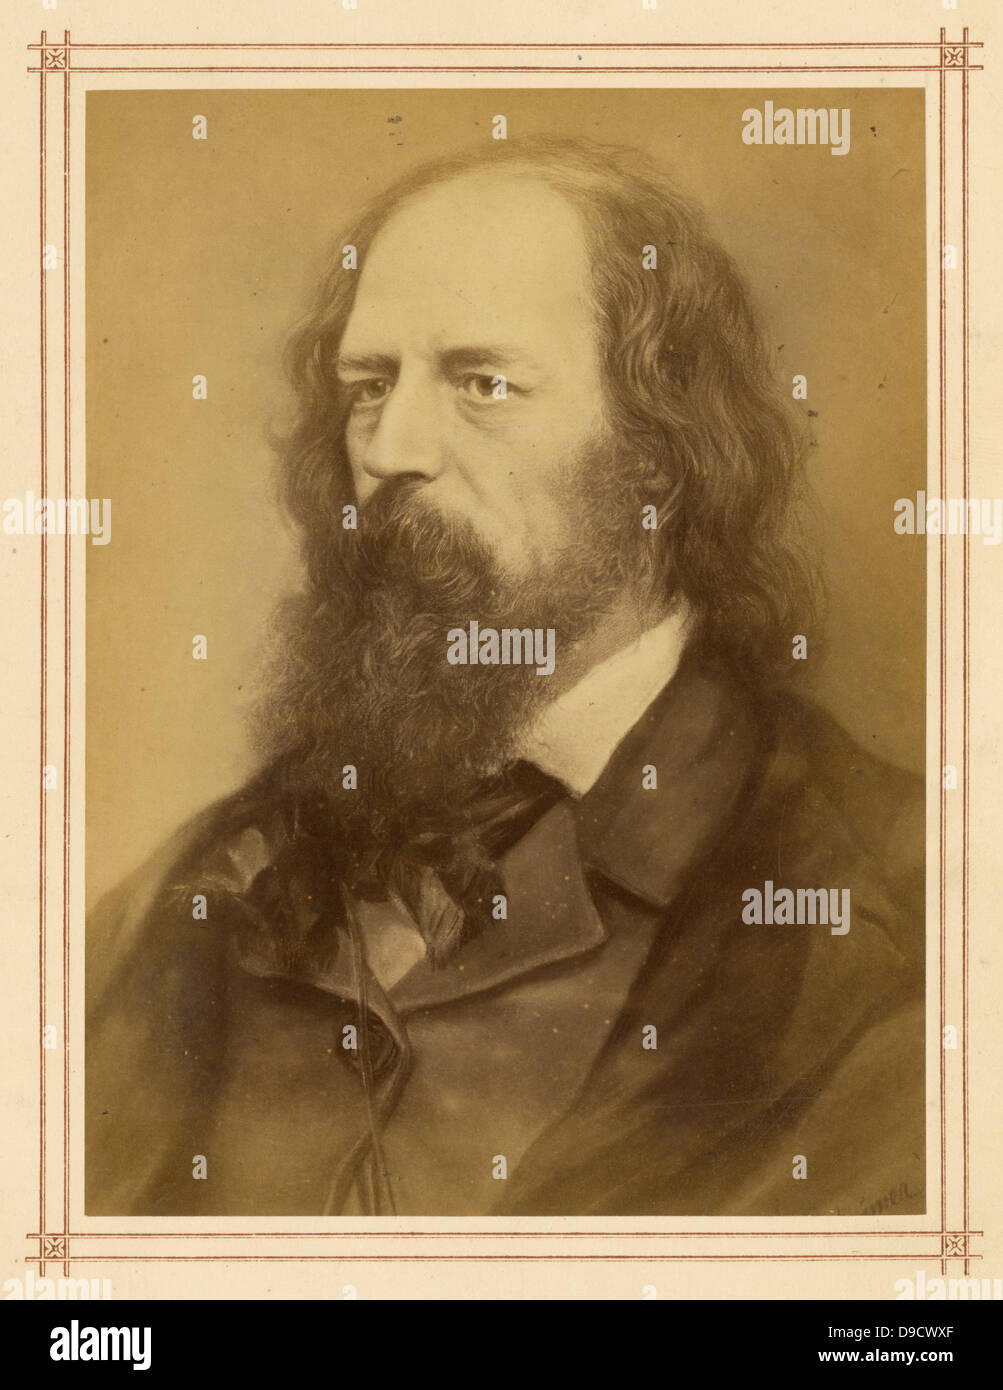 Alfred, Signore Tennyson (1809-1892) poeta inglese dell'epoca vittoriana. È stato nominato poeta laureato nel 1850 e rimane una delle più leggere poeti di lingua inglese. Foto Stock